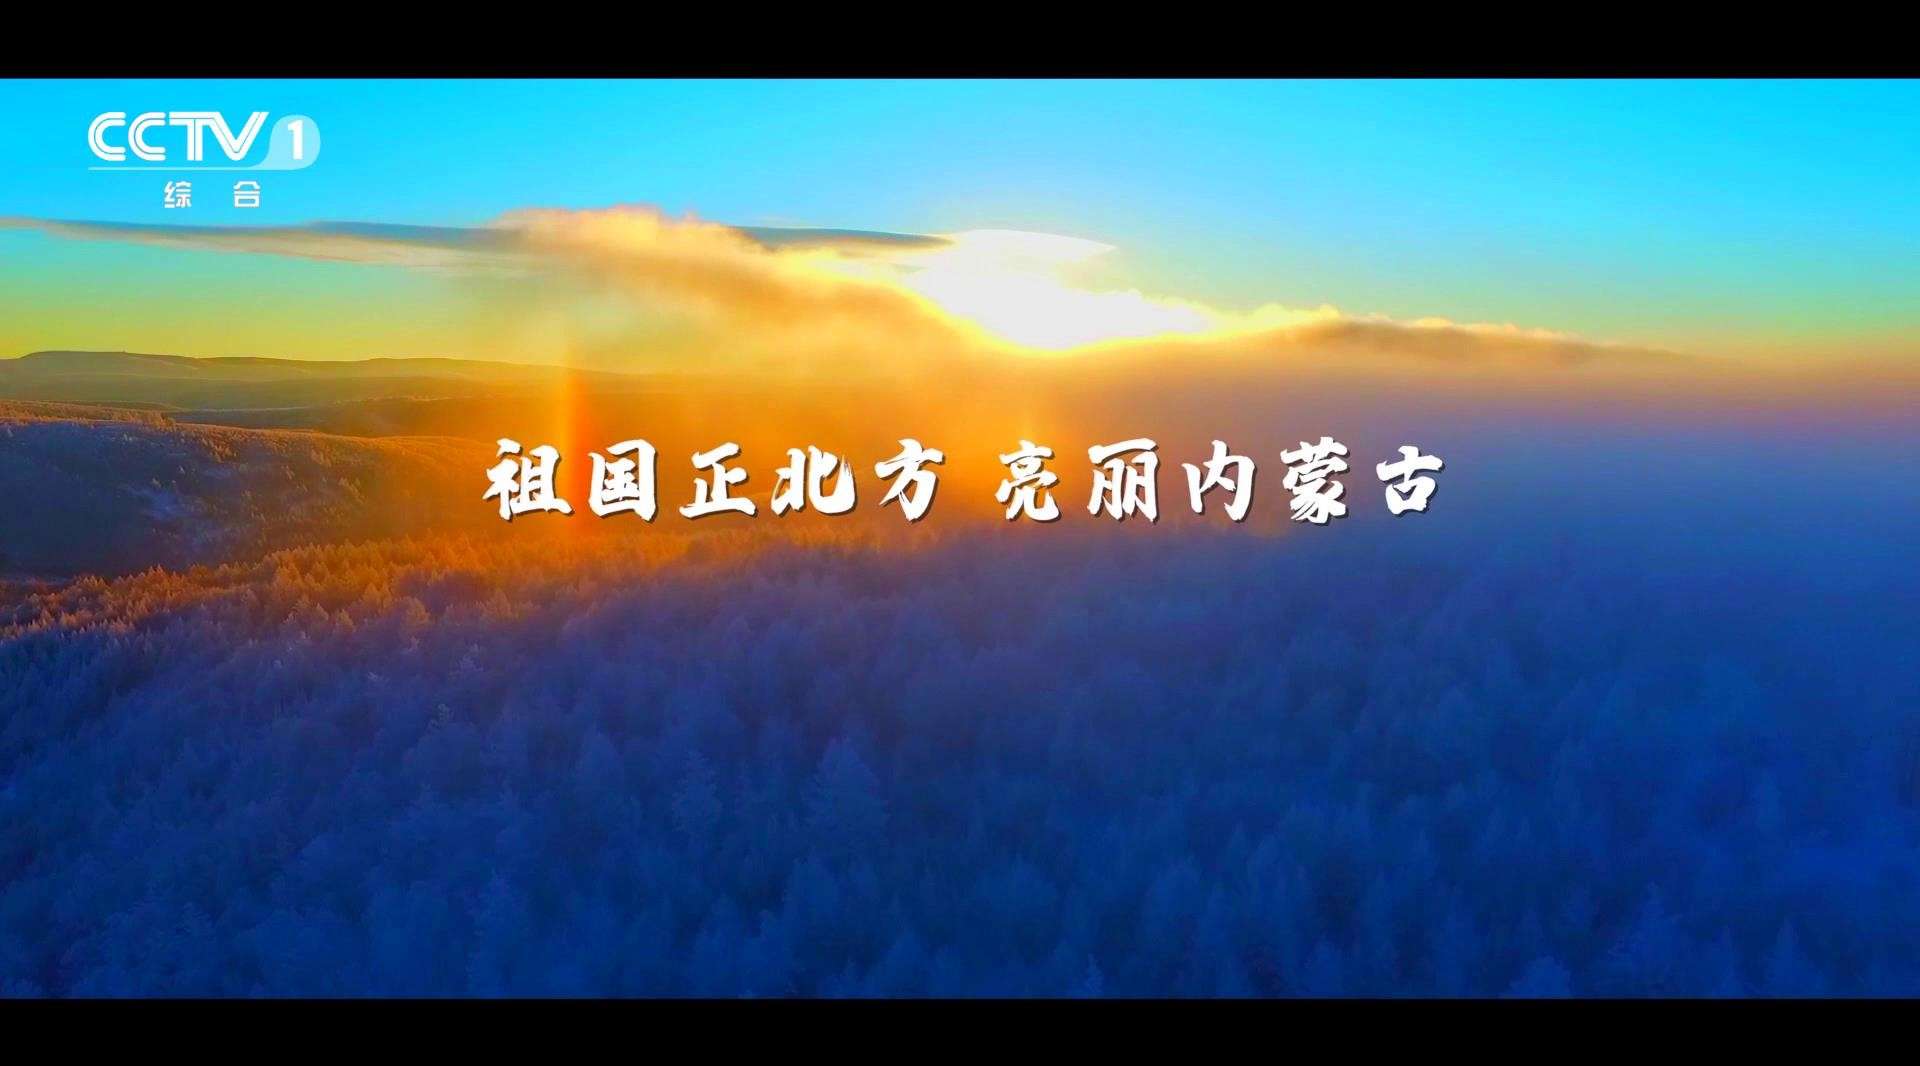 央视15秒广告片-内蒙古冬季篇